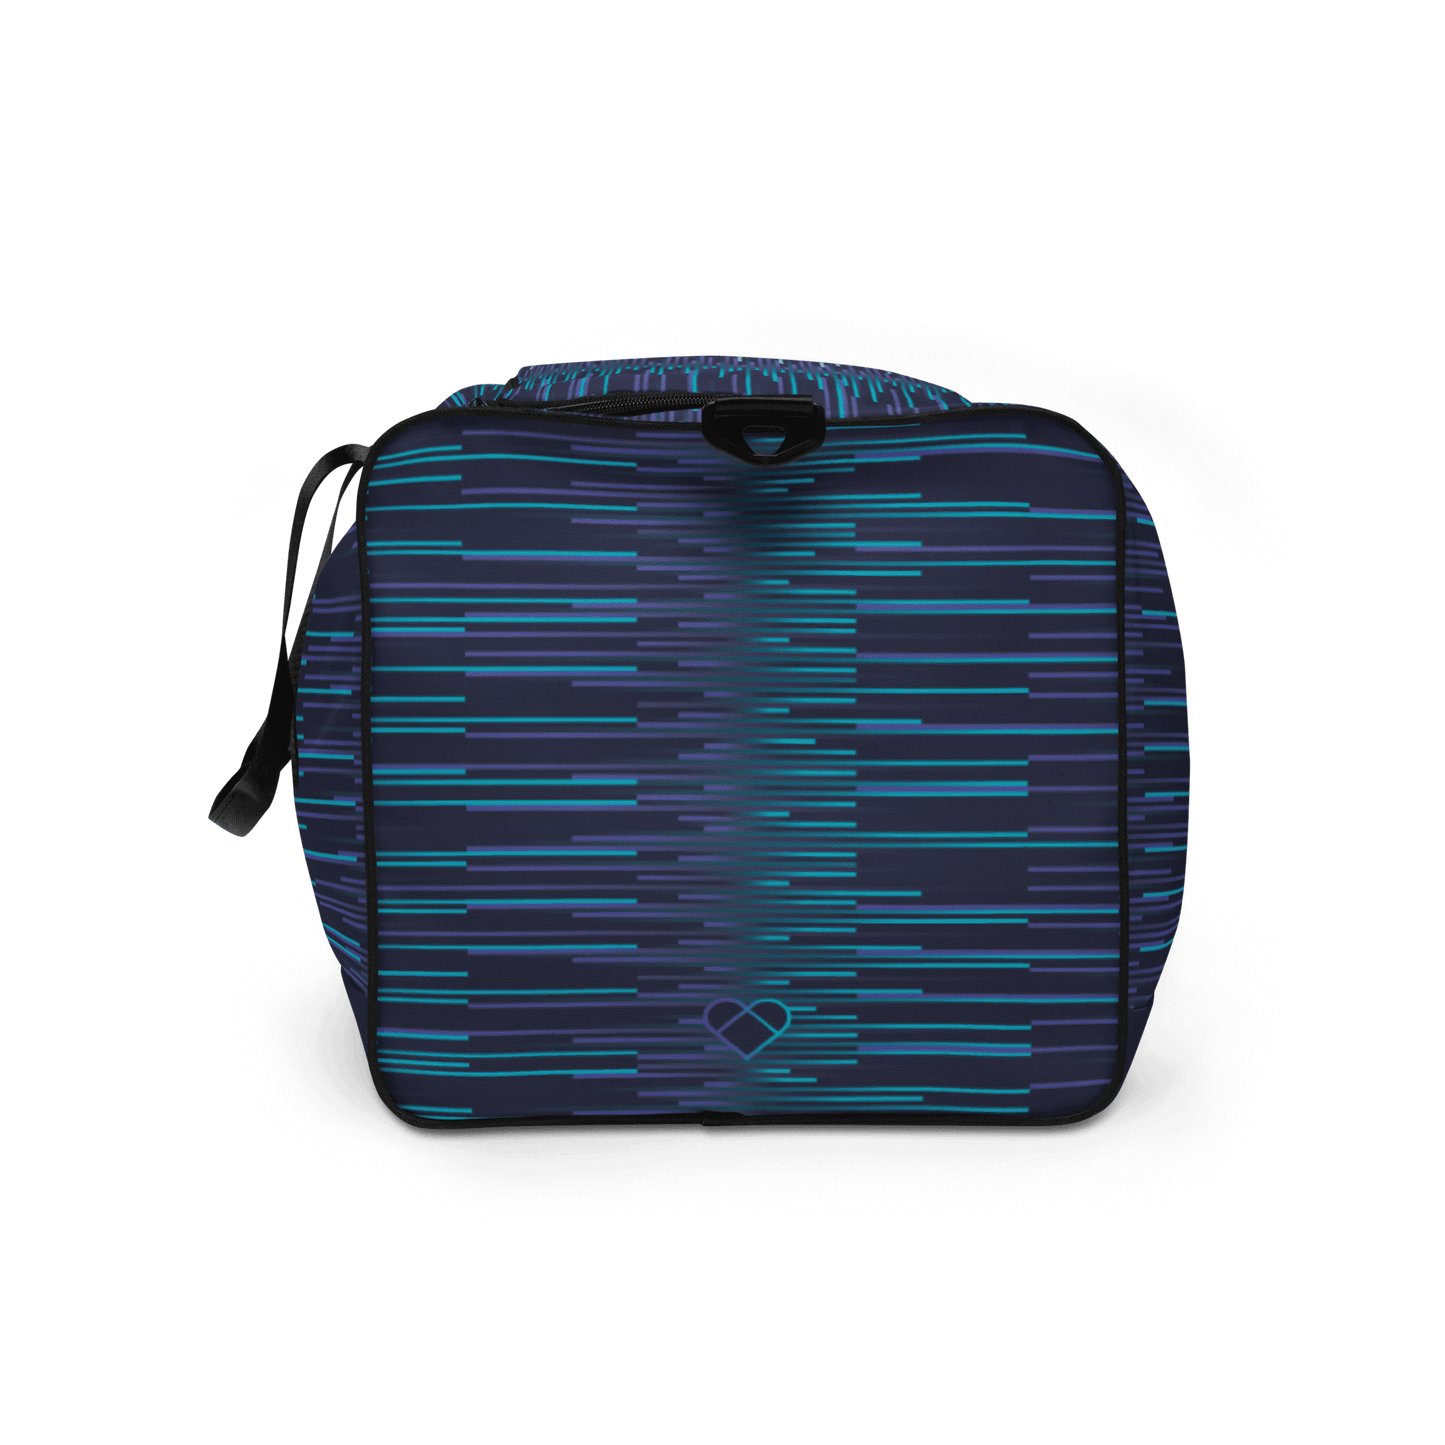 Designer Unisex Bag, Limited Edition from CRiZ AMOR